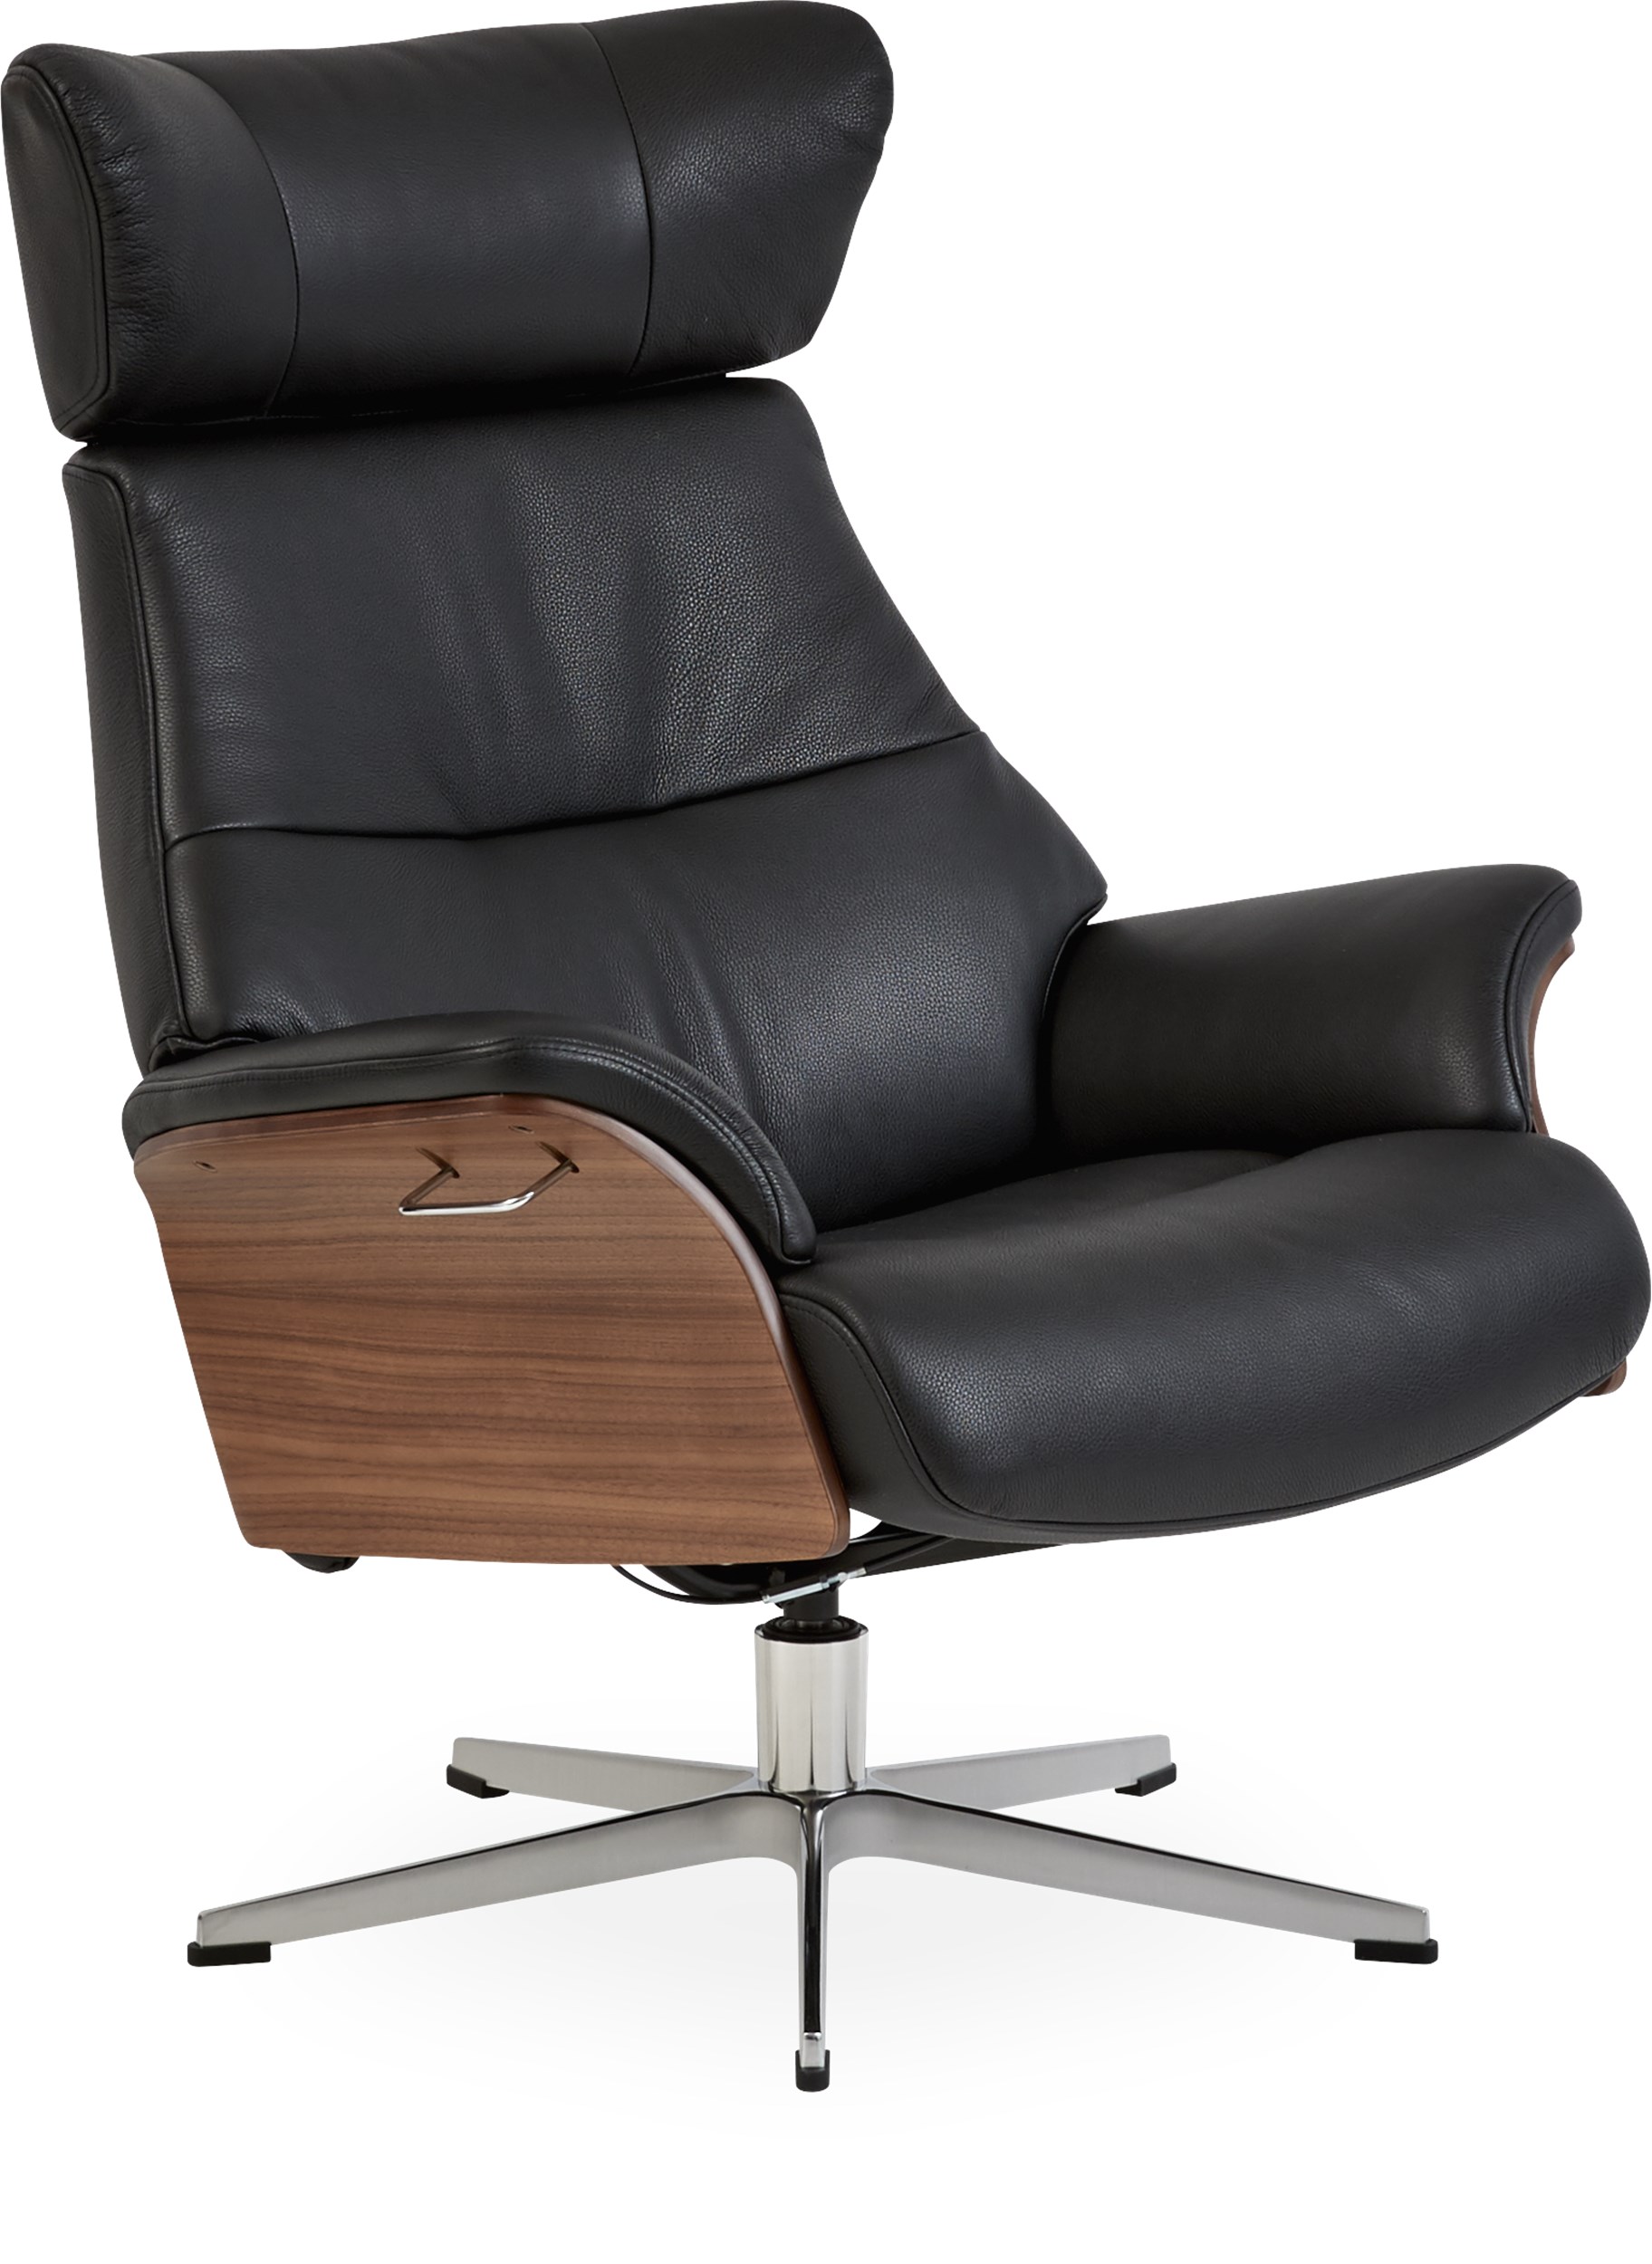 Air Fåtölj - Fantasty 2514-89 black läder, armrest in walnut och fot i aluminium